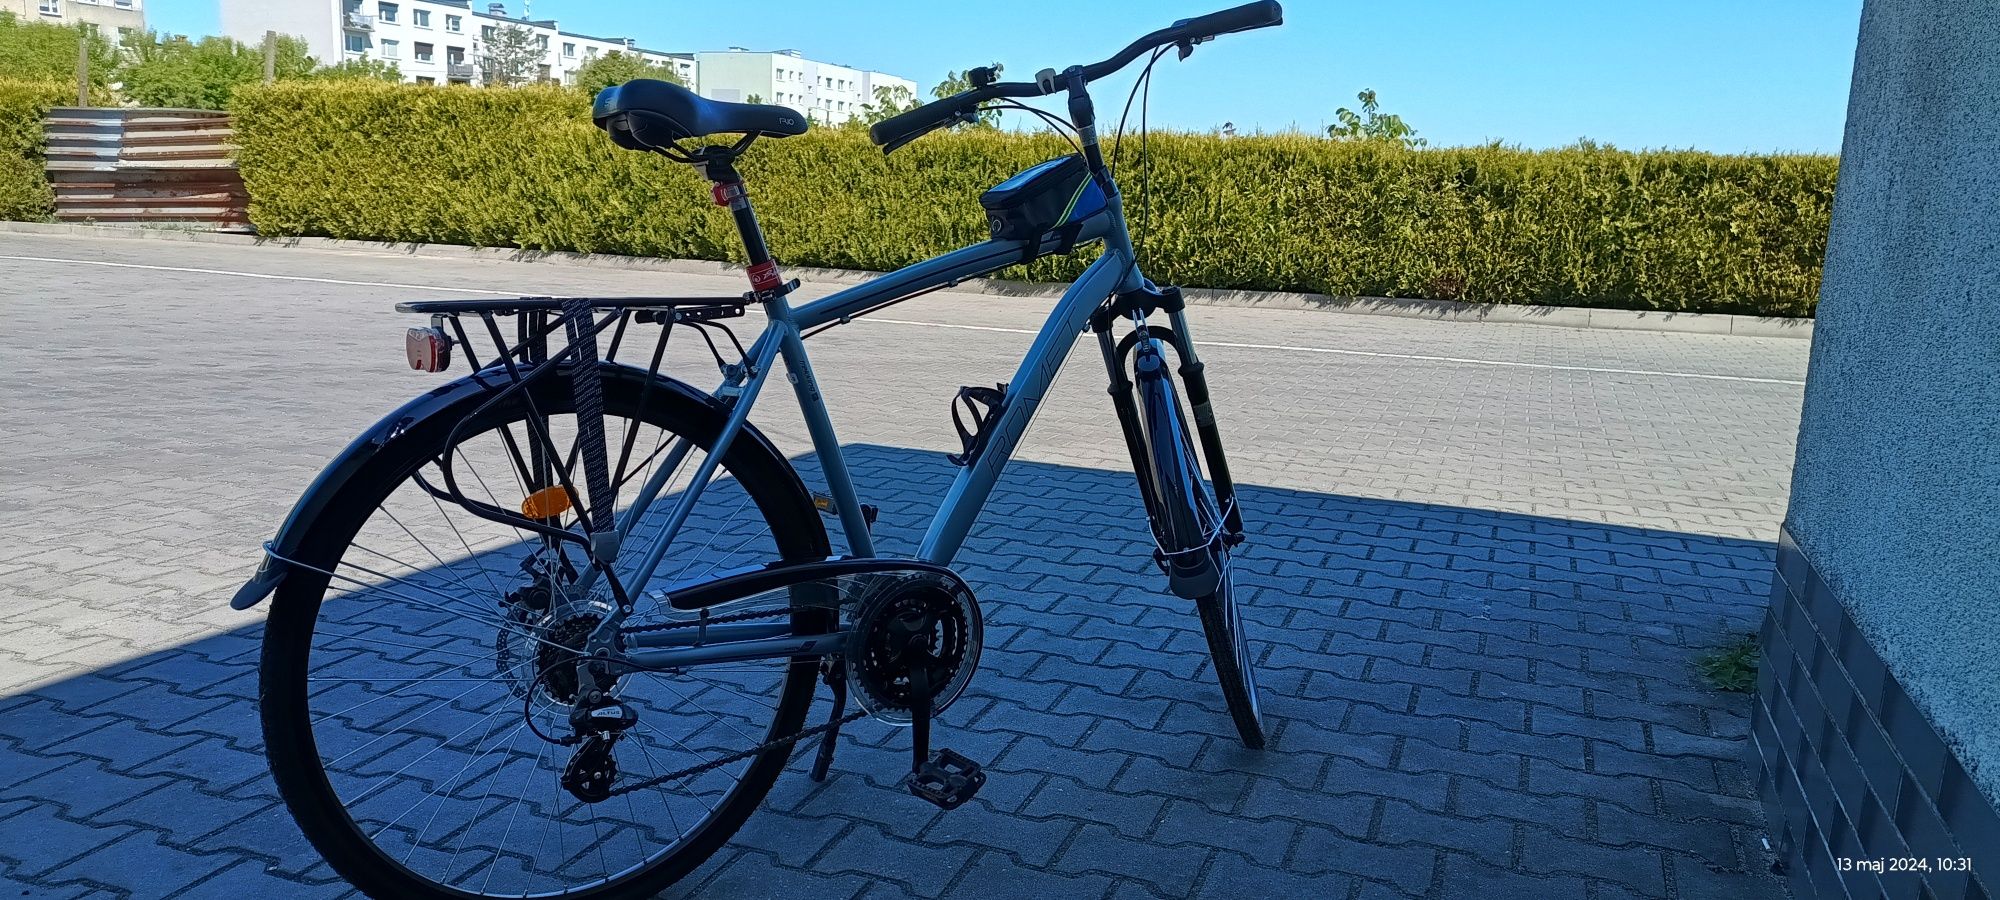 Sprzedam rower treningowy ROMET